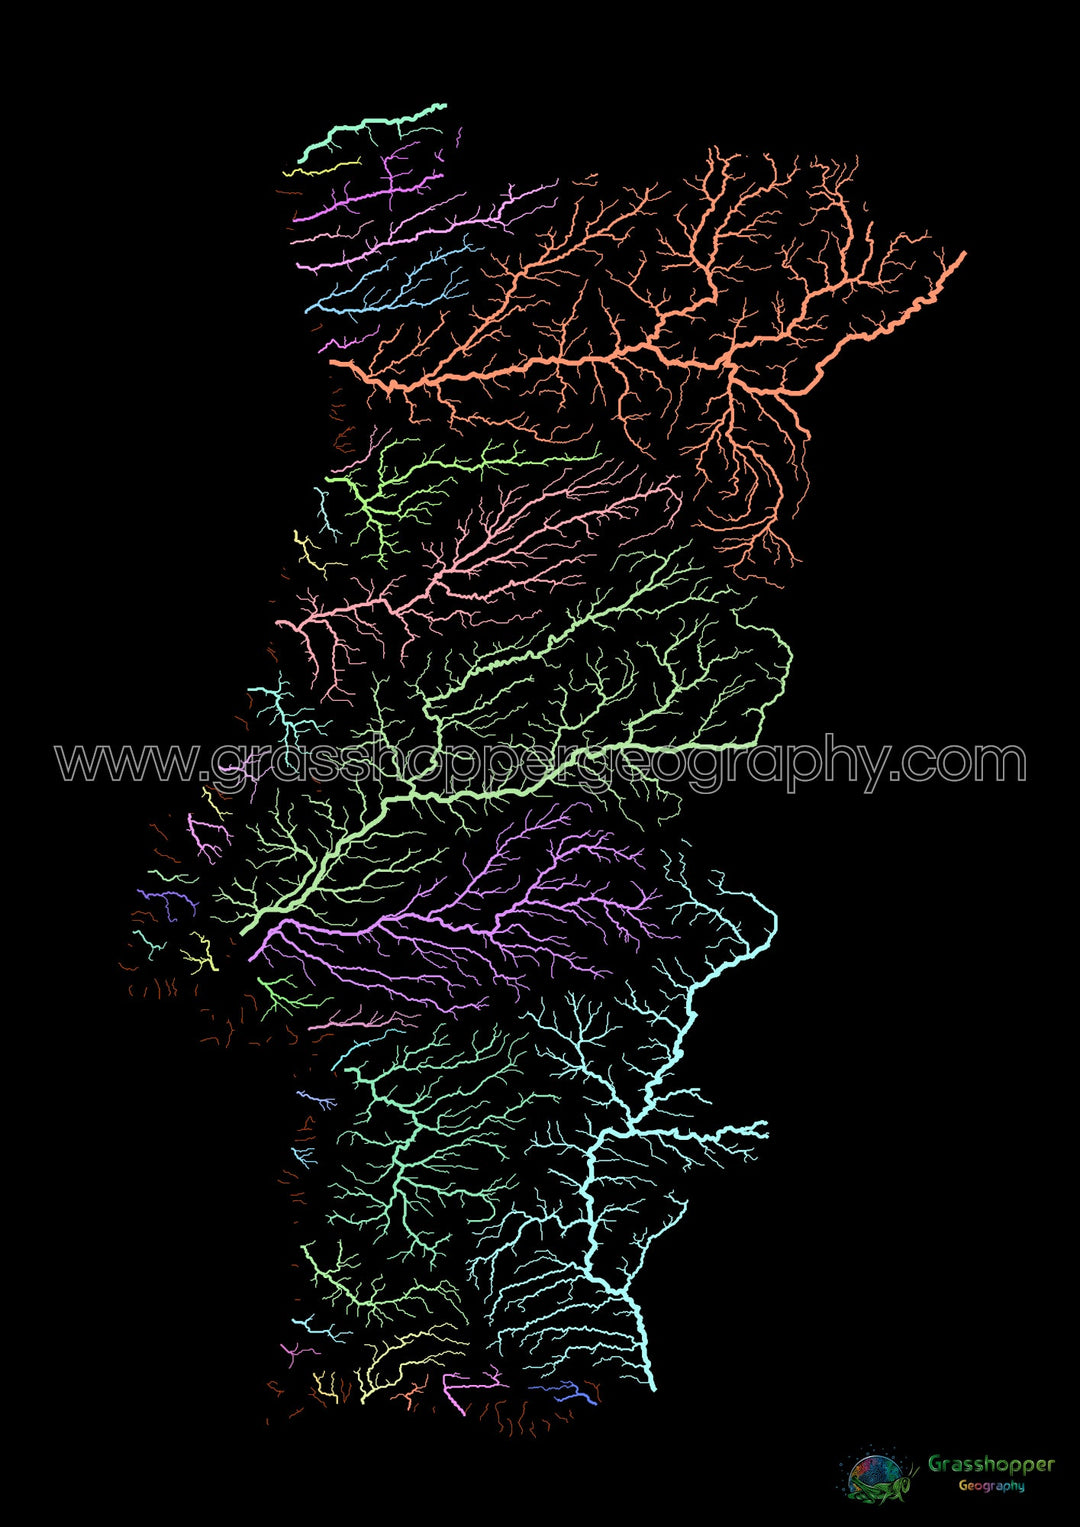 Portugal - Carte des bassins fluviaux, pastel sur noir - Fine Art Print